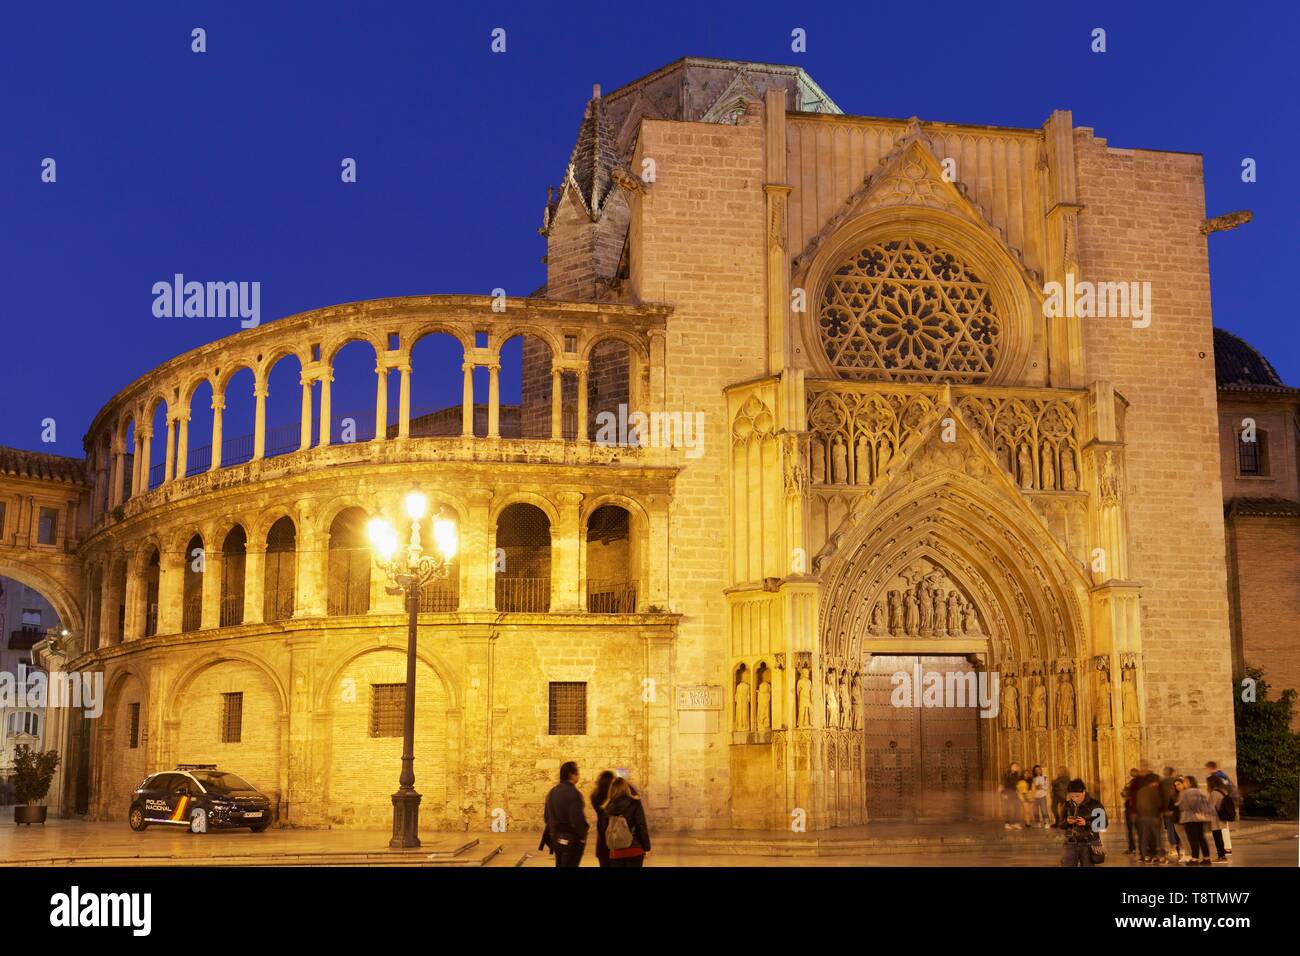 Gotische Apostel Portal der Kathedrale von Valencia, Abendlicht, Placa de la Mare de Deu, Ciutat Vella, Altstadt, Valencia, Spanien, beleuchtet Stockfoto